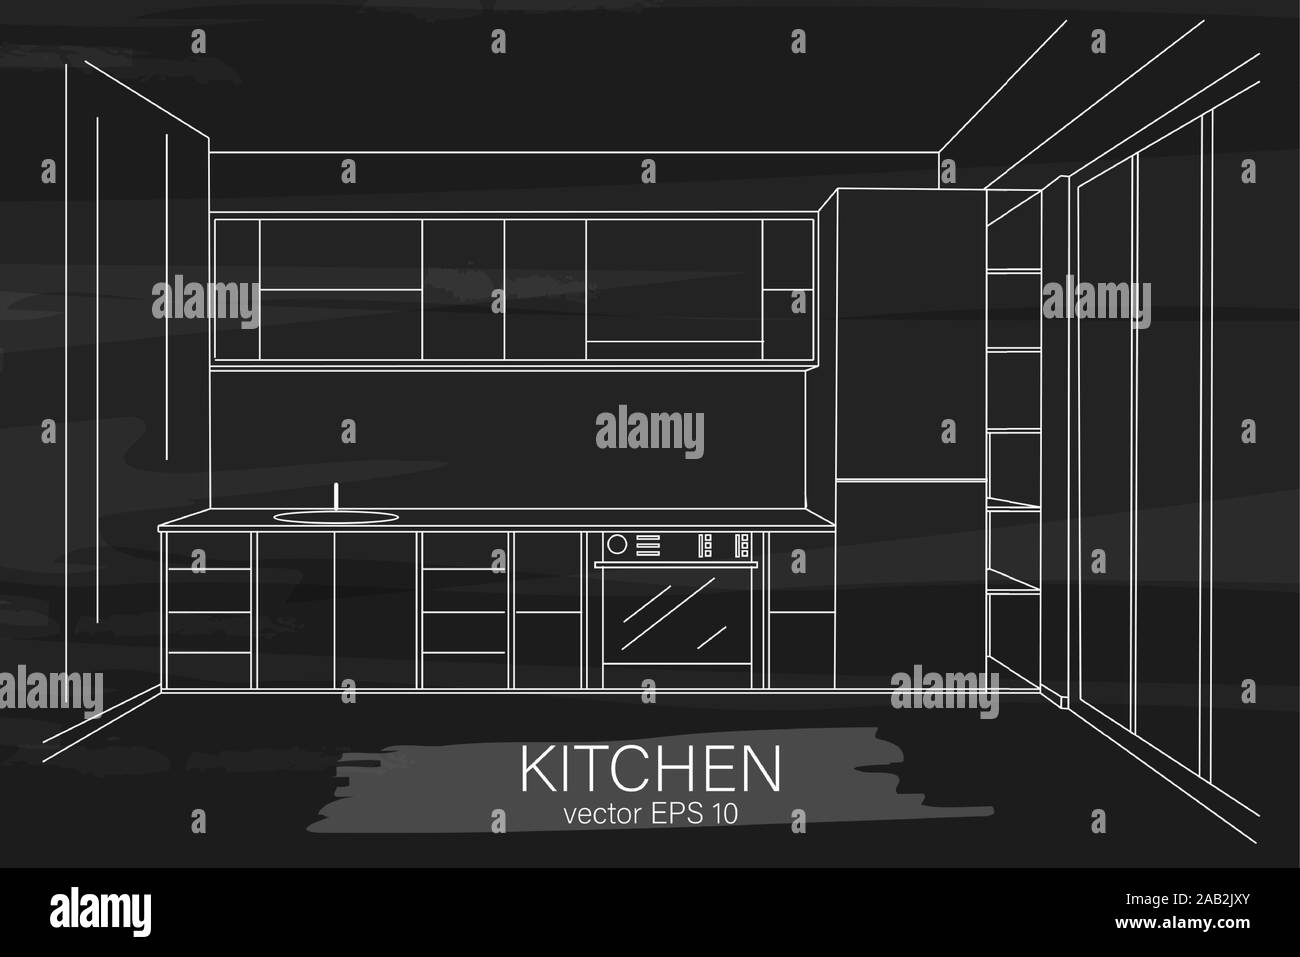 Eine moderne, minimalistische Küche Skizze. Spüle, Herd und Kühlschrank. Schwarze Farbe Hintergrund. Vektor Stock Vektor